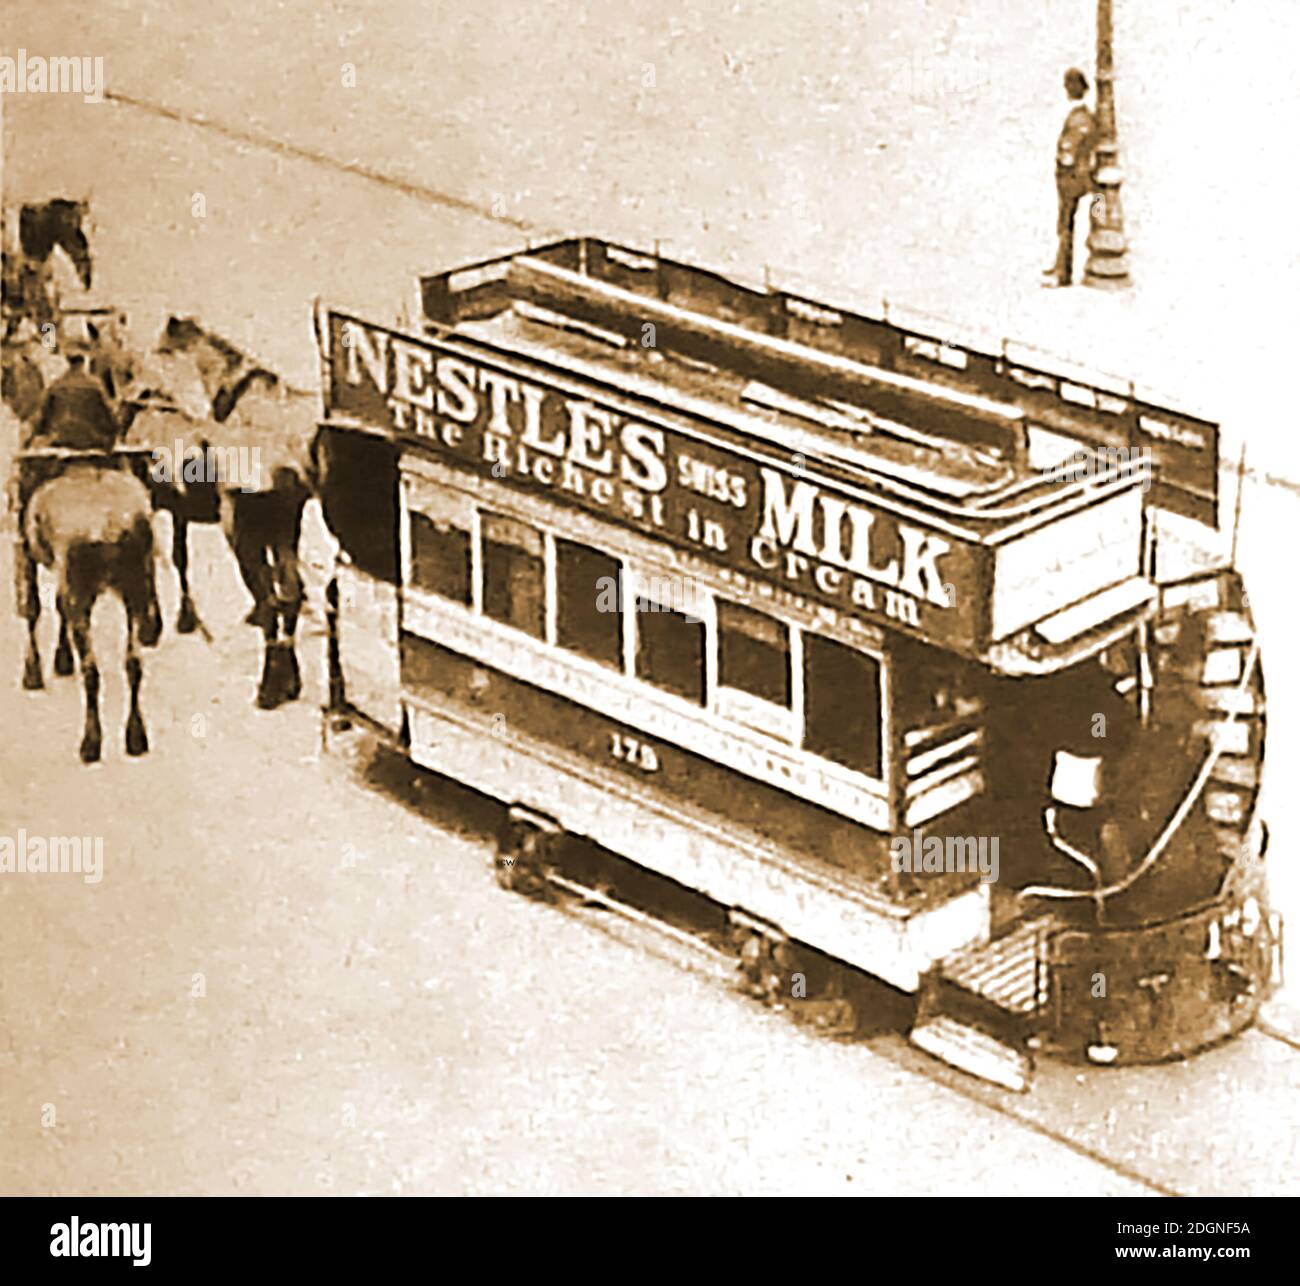 Un tramway victorien tiré par des chevaux (No 173) , la publicité niche le lait. ---- américain, George Francis train a introduit les tramways à Birkenhead pour la première fois en 1860, mais il a été emprisonné pour avoir "brisé et blessé" l'autoroute avec lui lorsqu'il a posé des voies de tramway sur les routes de Londres. Après une loi du Parlement de 1870 a facilité la création de nombreuses compagnies de tramway dessinées par des chevaux.le dernier tramway tiré par des chevaux a pris fin à Londres en 1915 Banque D'Images